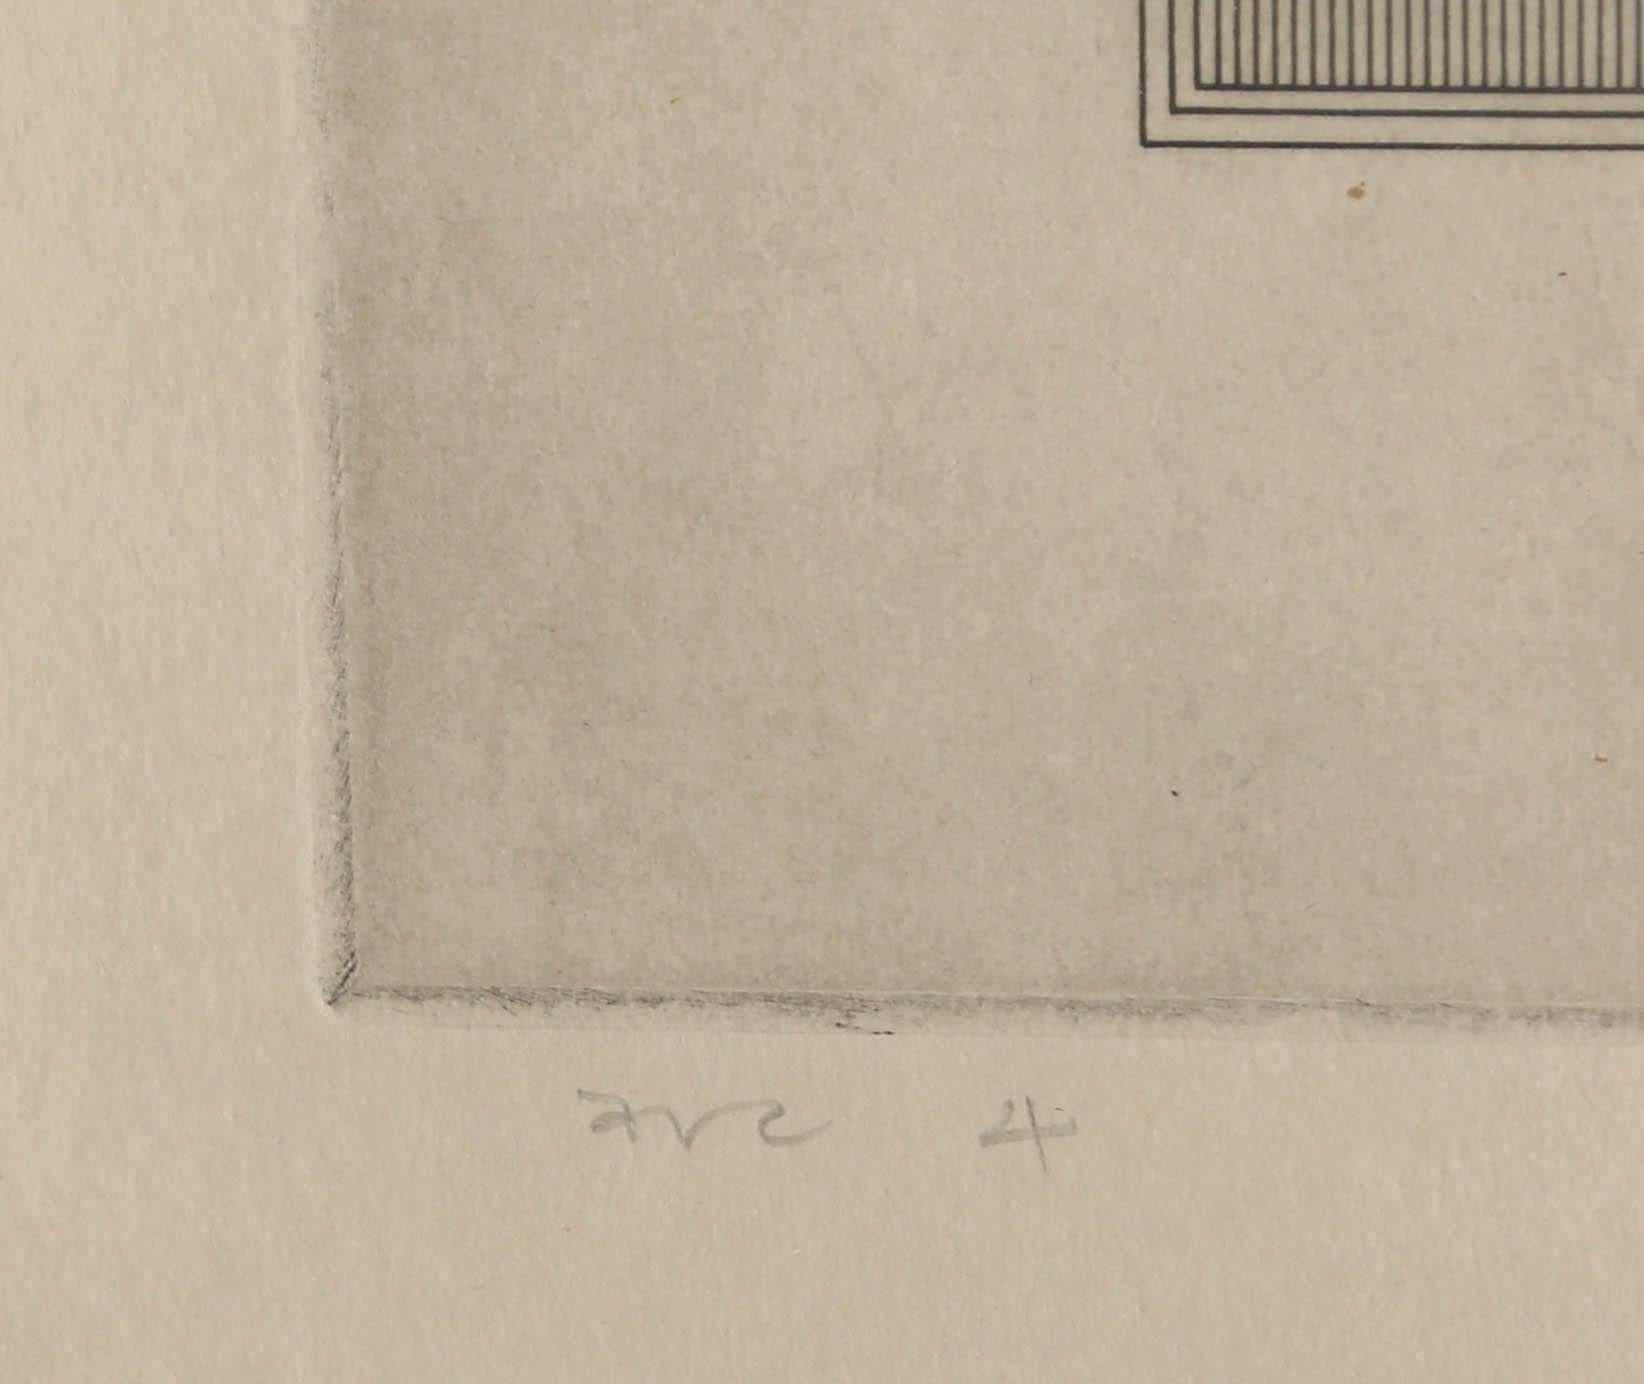 Arc 4, minimalistische Radierung von Gordon House, 1971 3